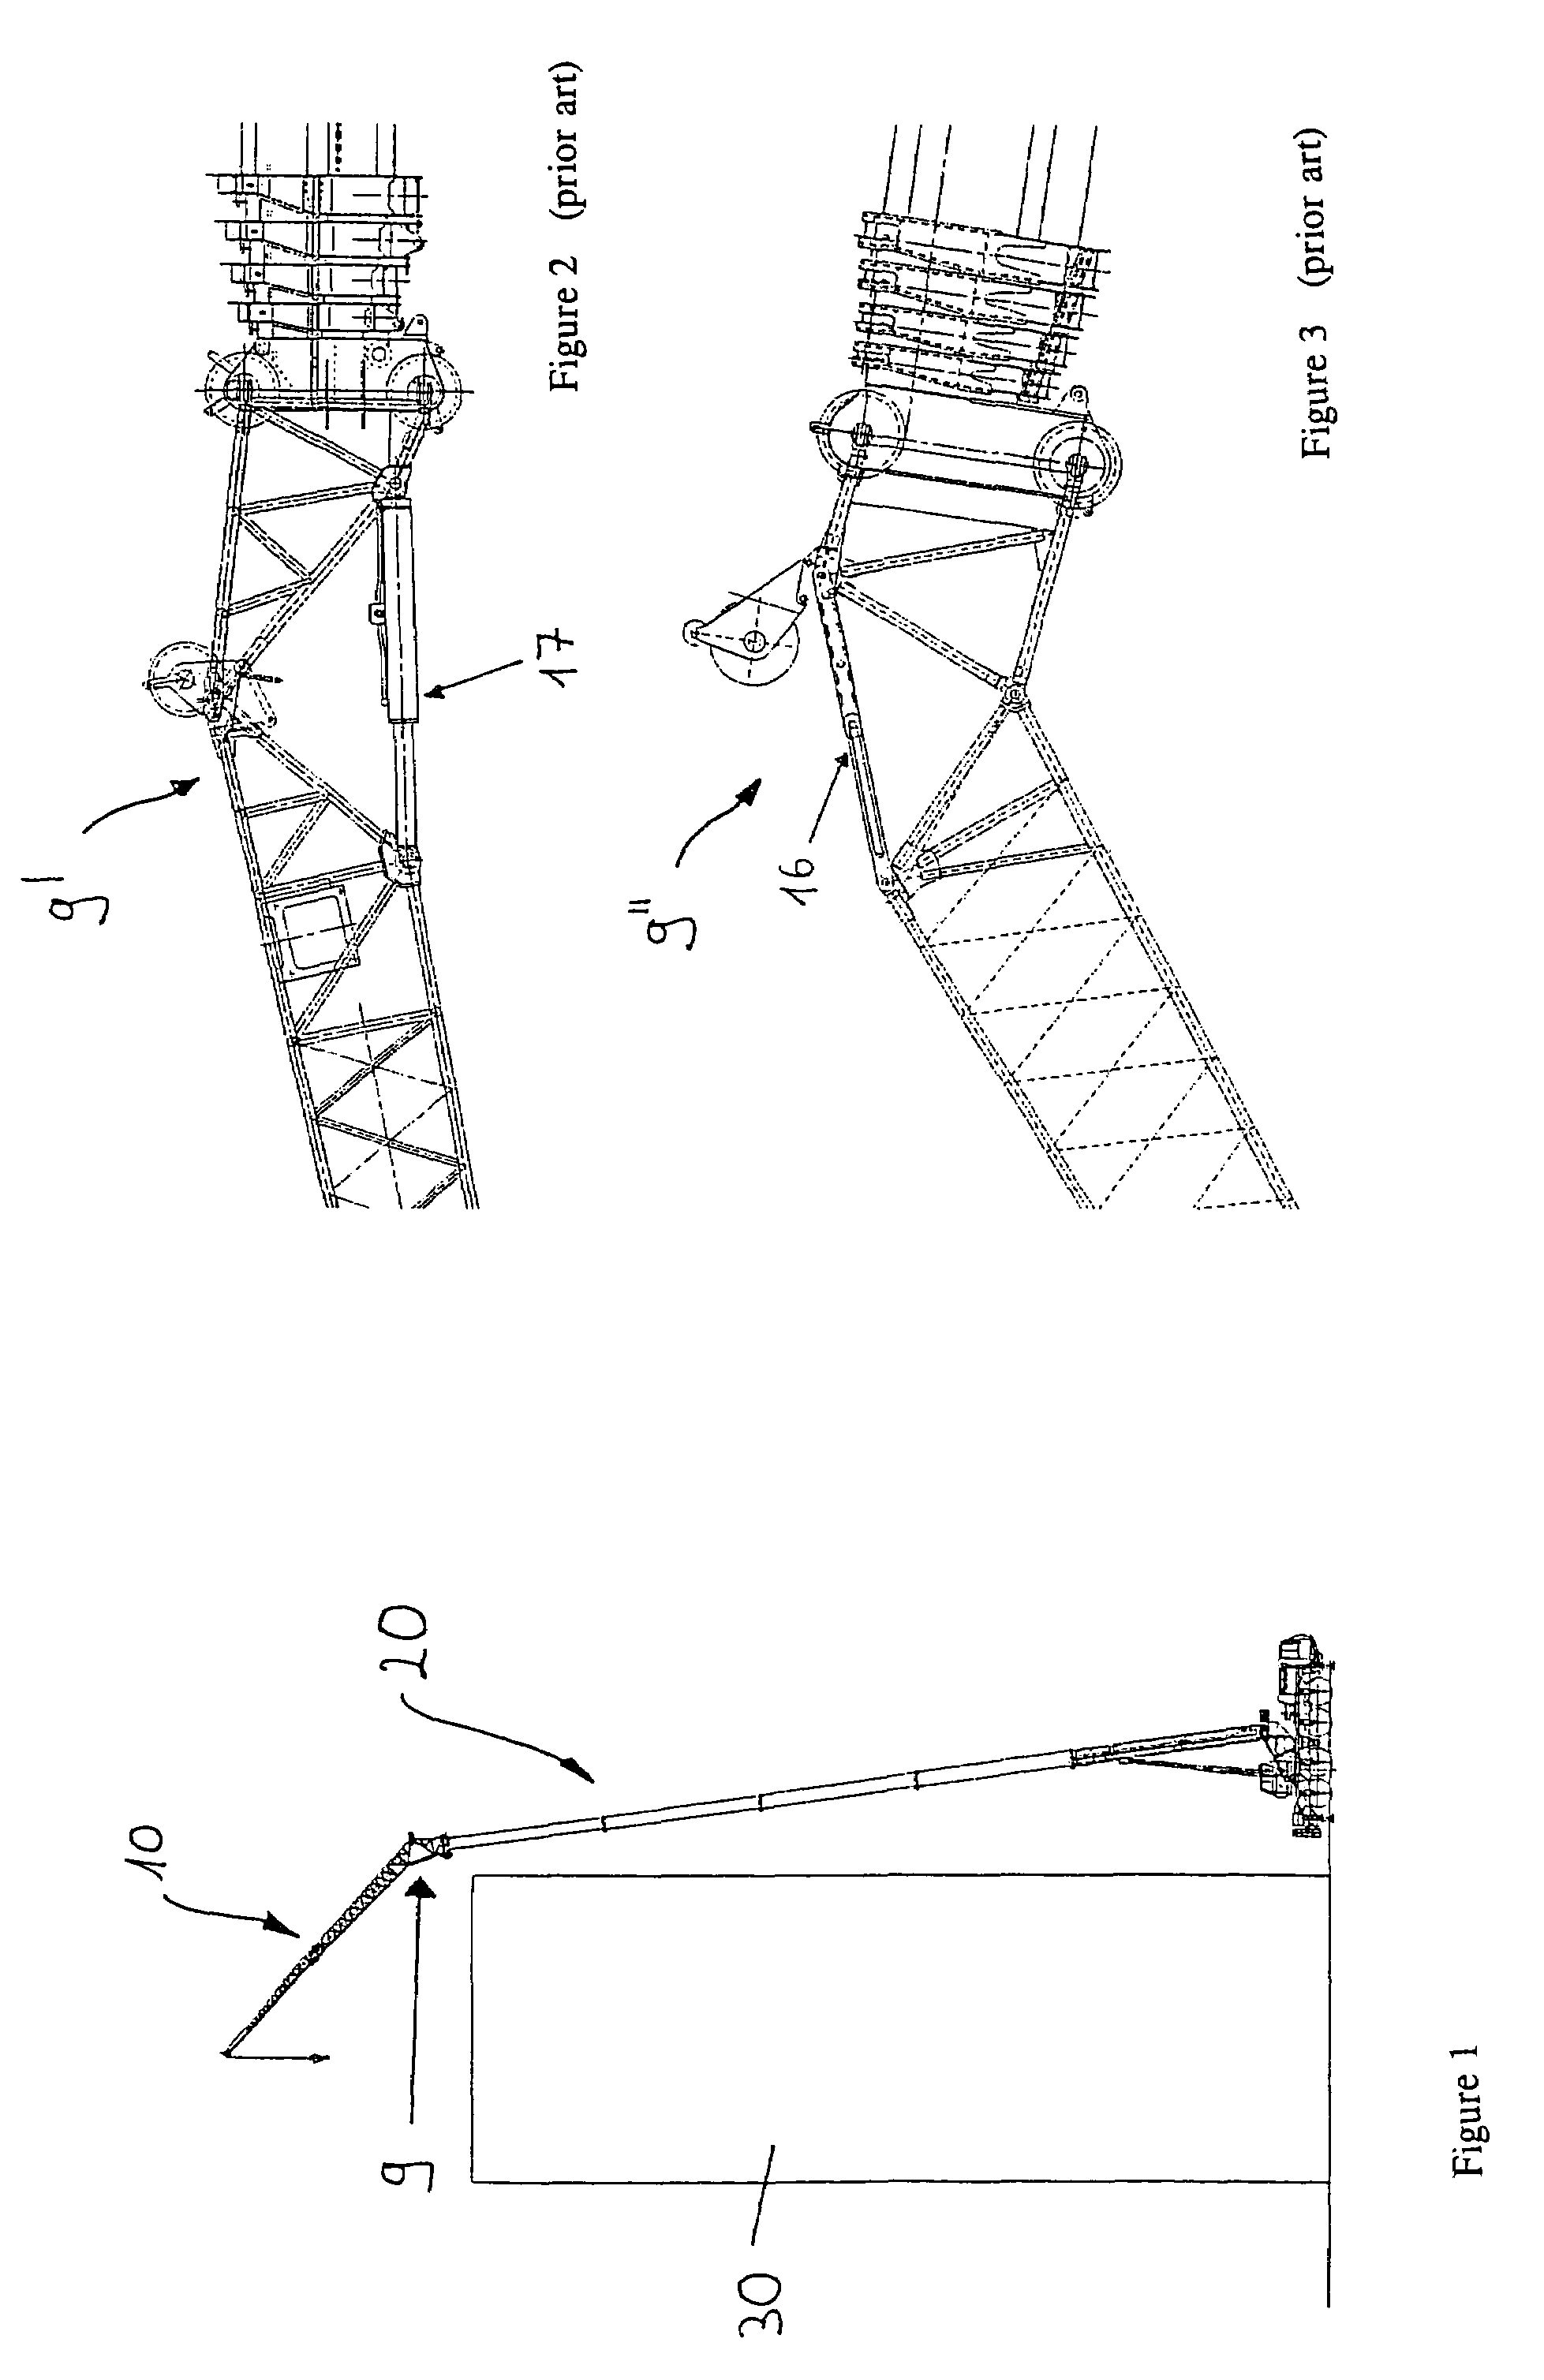 Folding pinnacle bending device